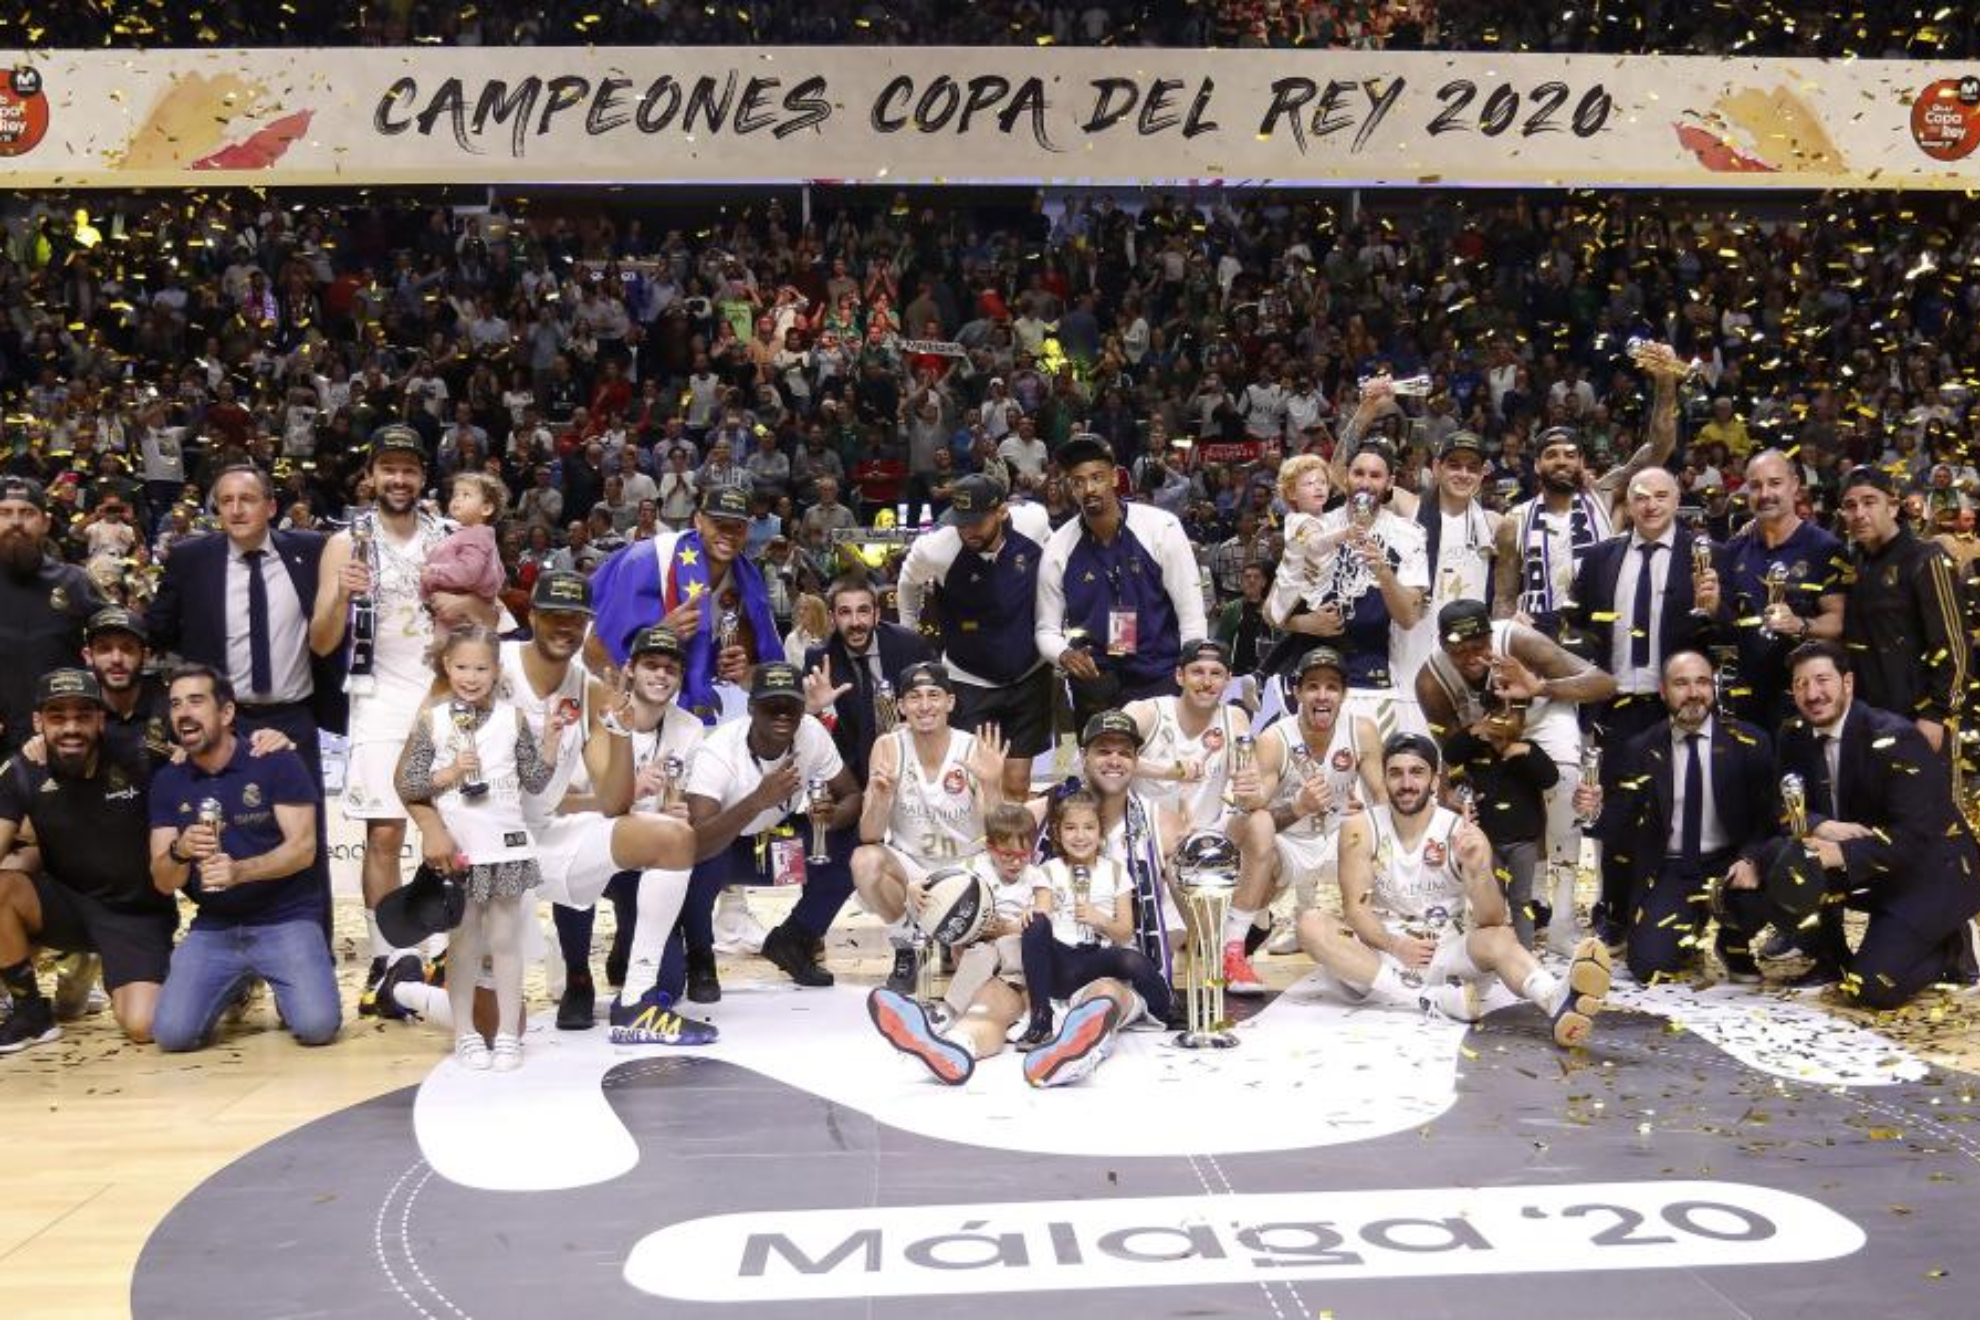 La plantilla del Real Madrid celebra la Copa del Rey conseguida en 2020.